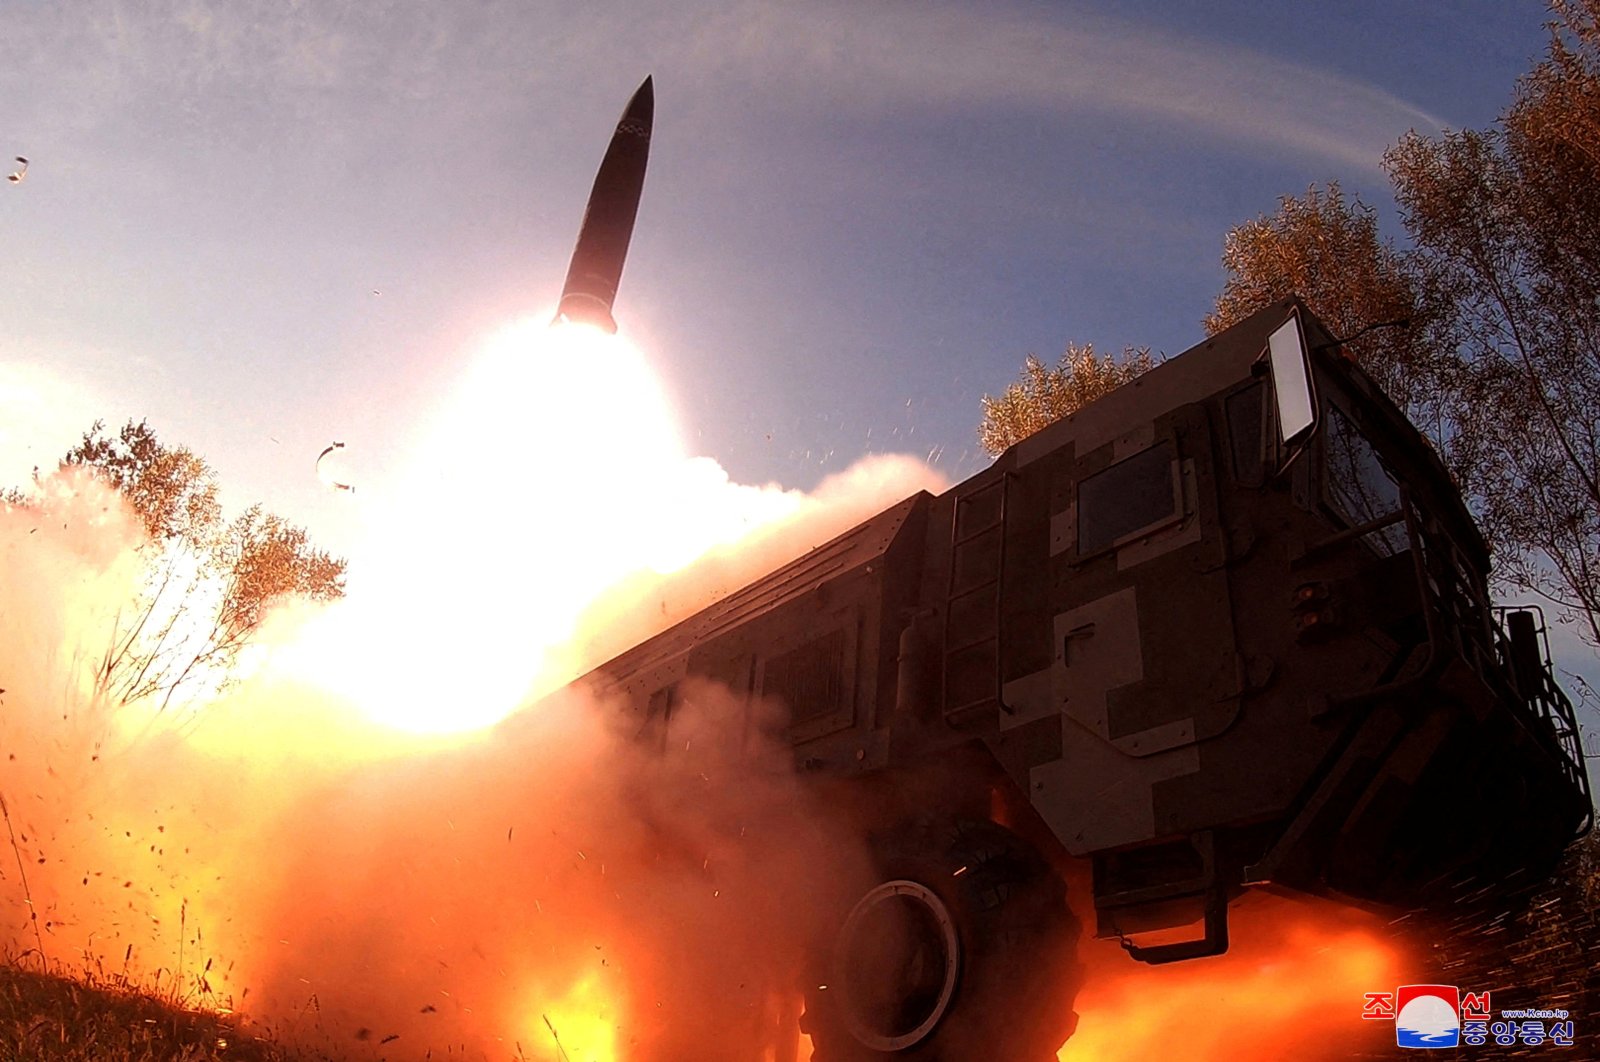 Kuzey Kore, uzun menzilli stratejik seyir füzelerinin fırlatıldığını doğruladı